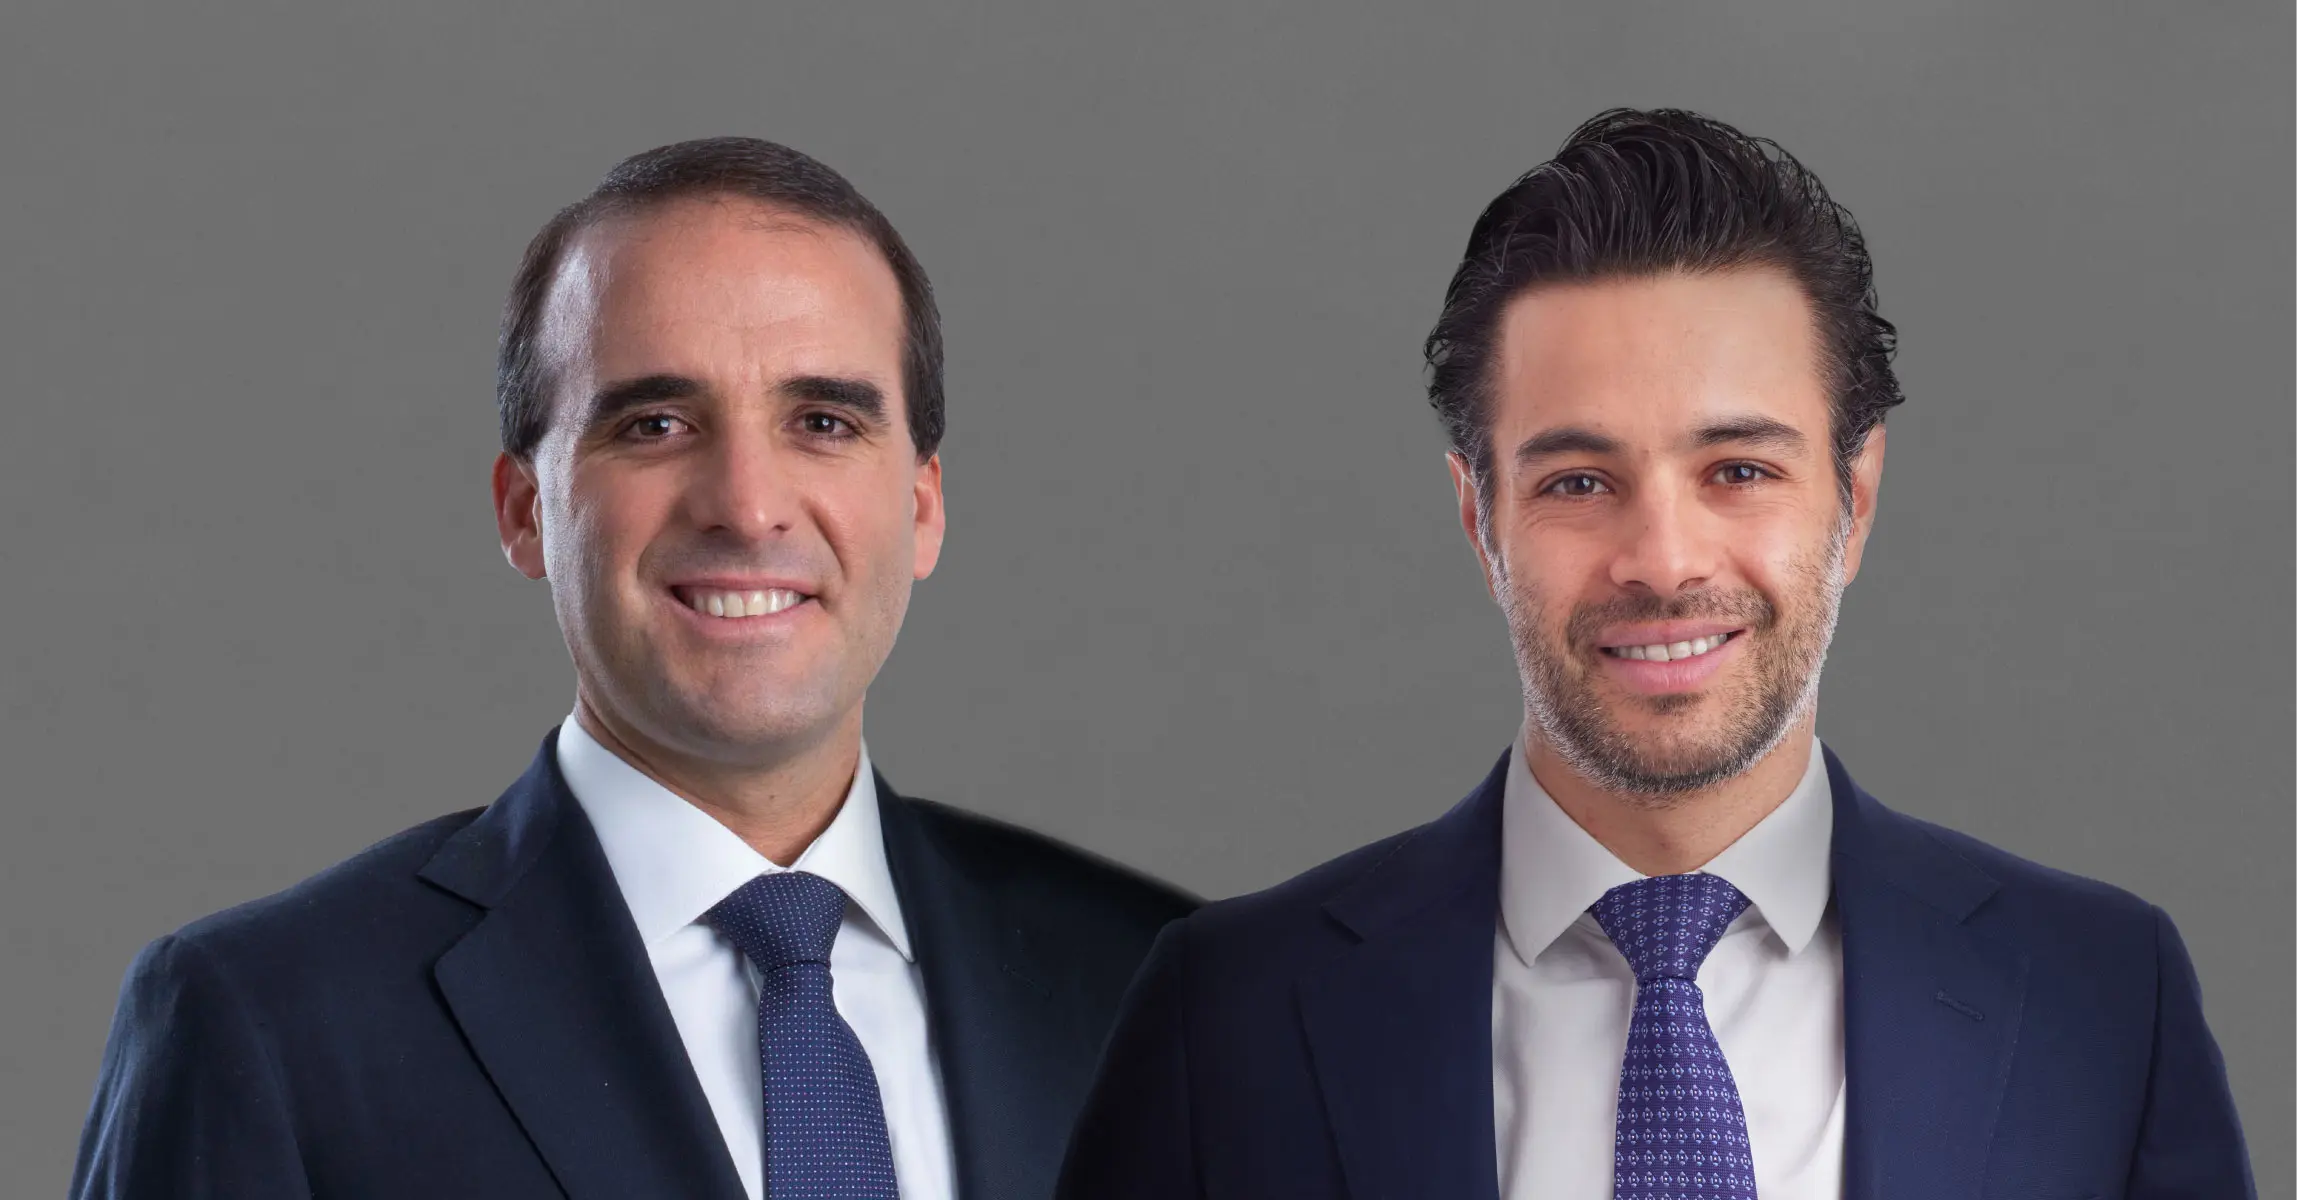 Cuatrecasas hires Diego Carrión and Juan David Mina as new partners